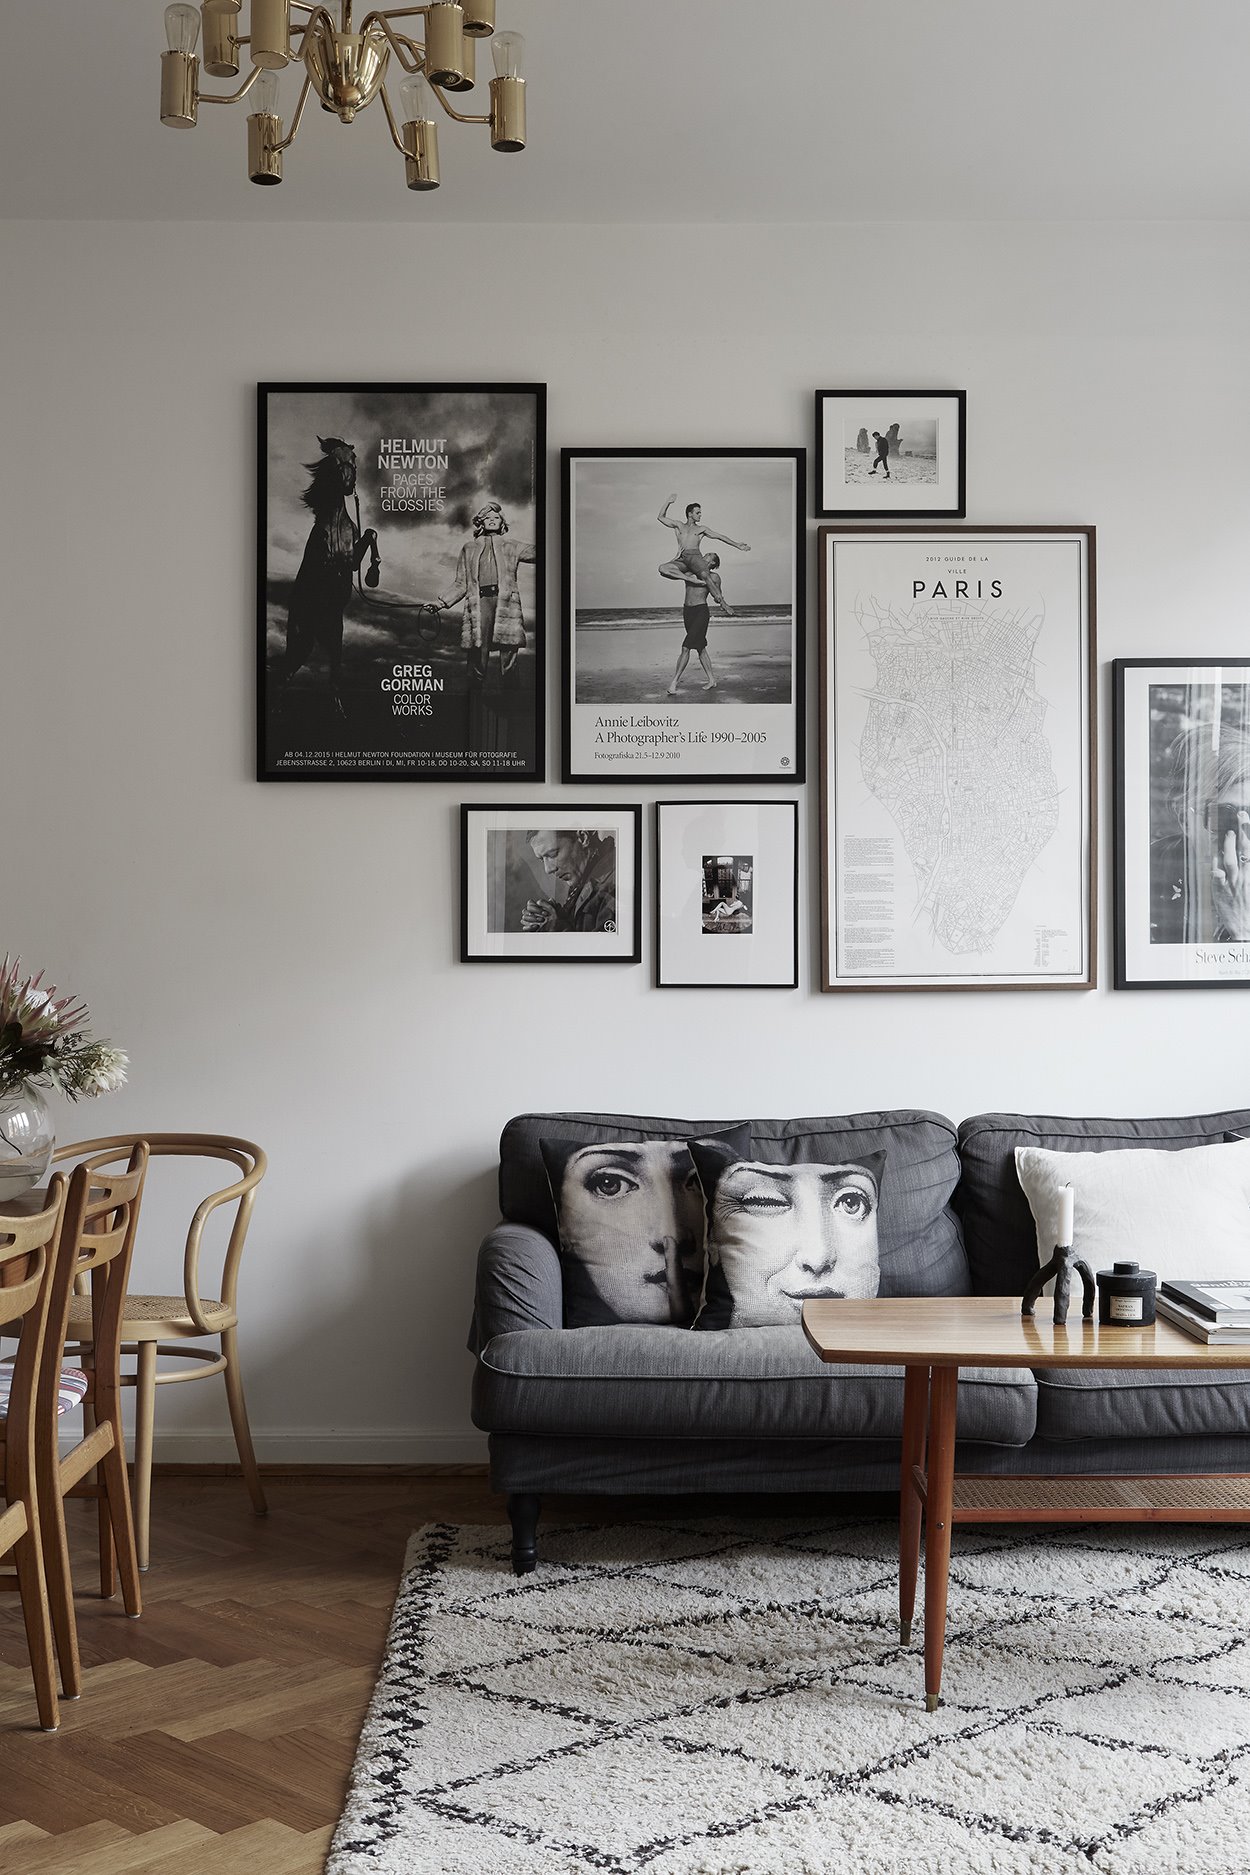 Salon de un piso con cuadros en la pared y sofa gris. Algo de arte